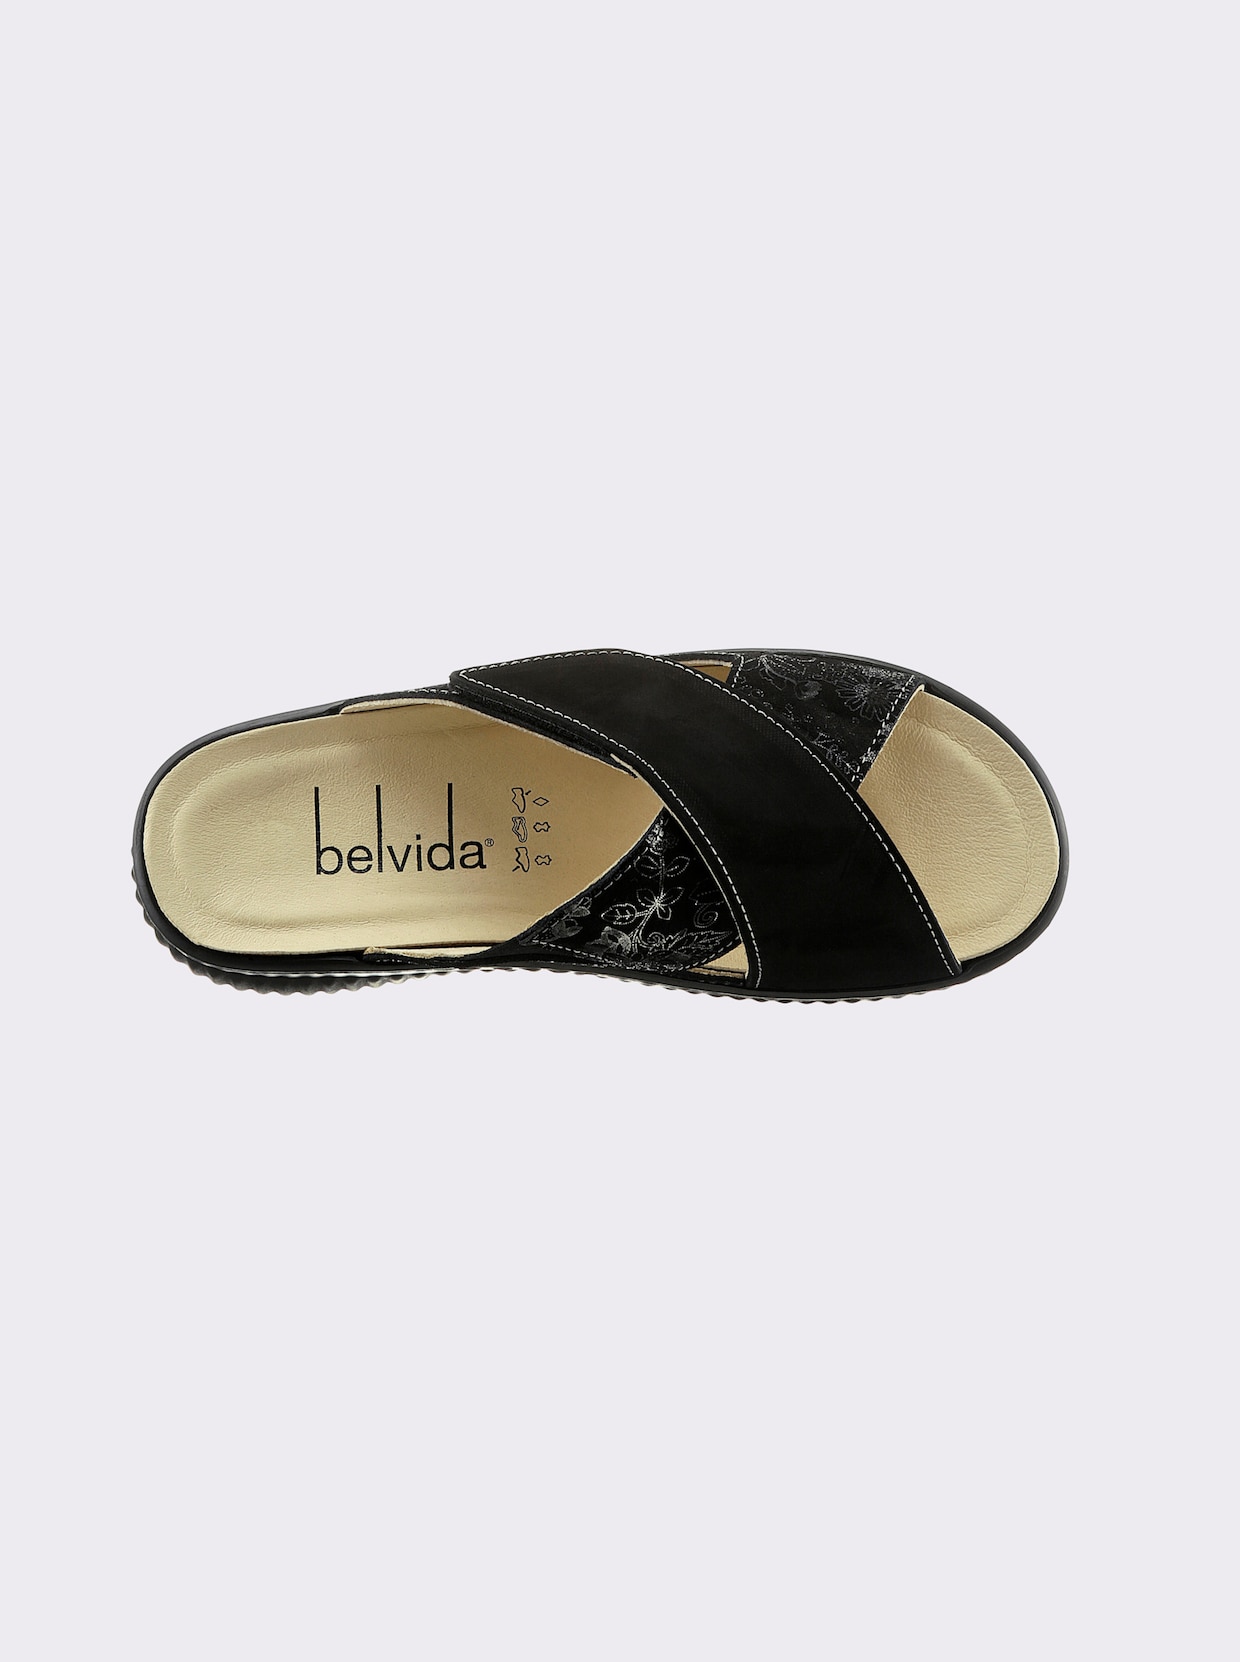 Belvida Pantolette - schwarz-gemustert